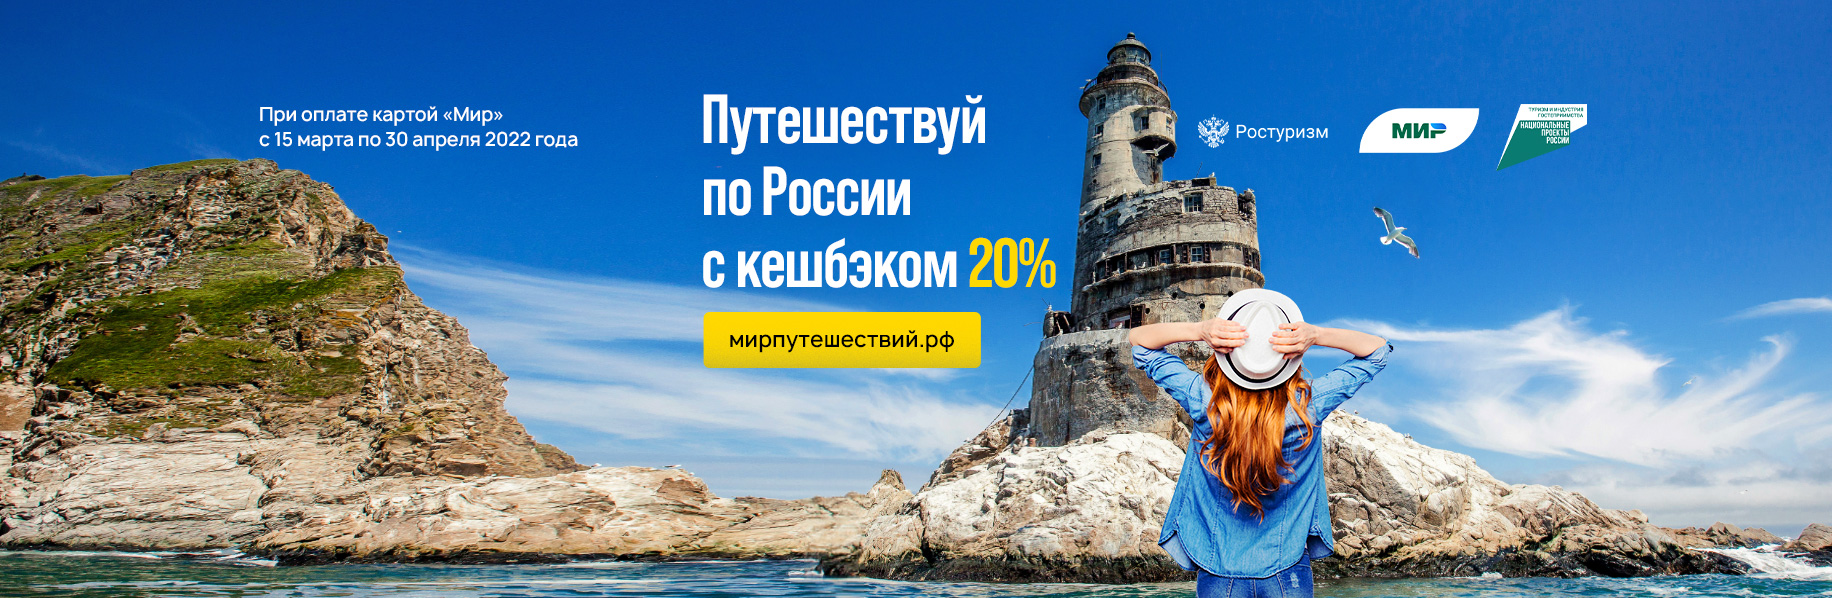 Мир путешествий рф 2022 год. Туры на море по России 2022.